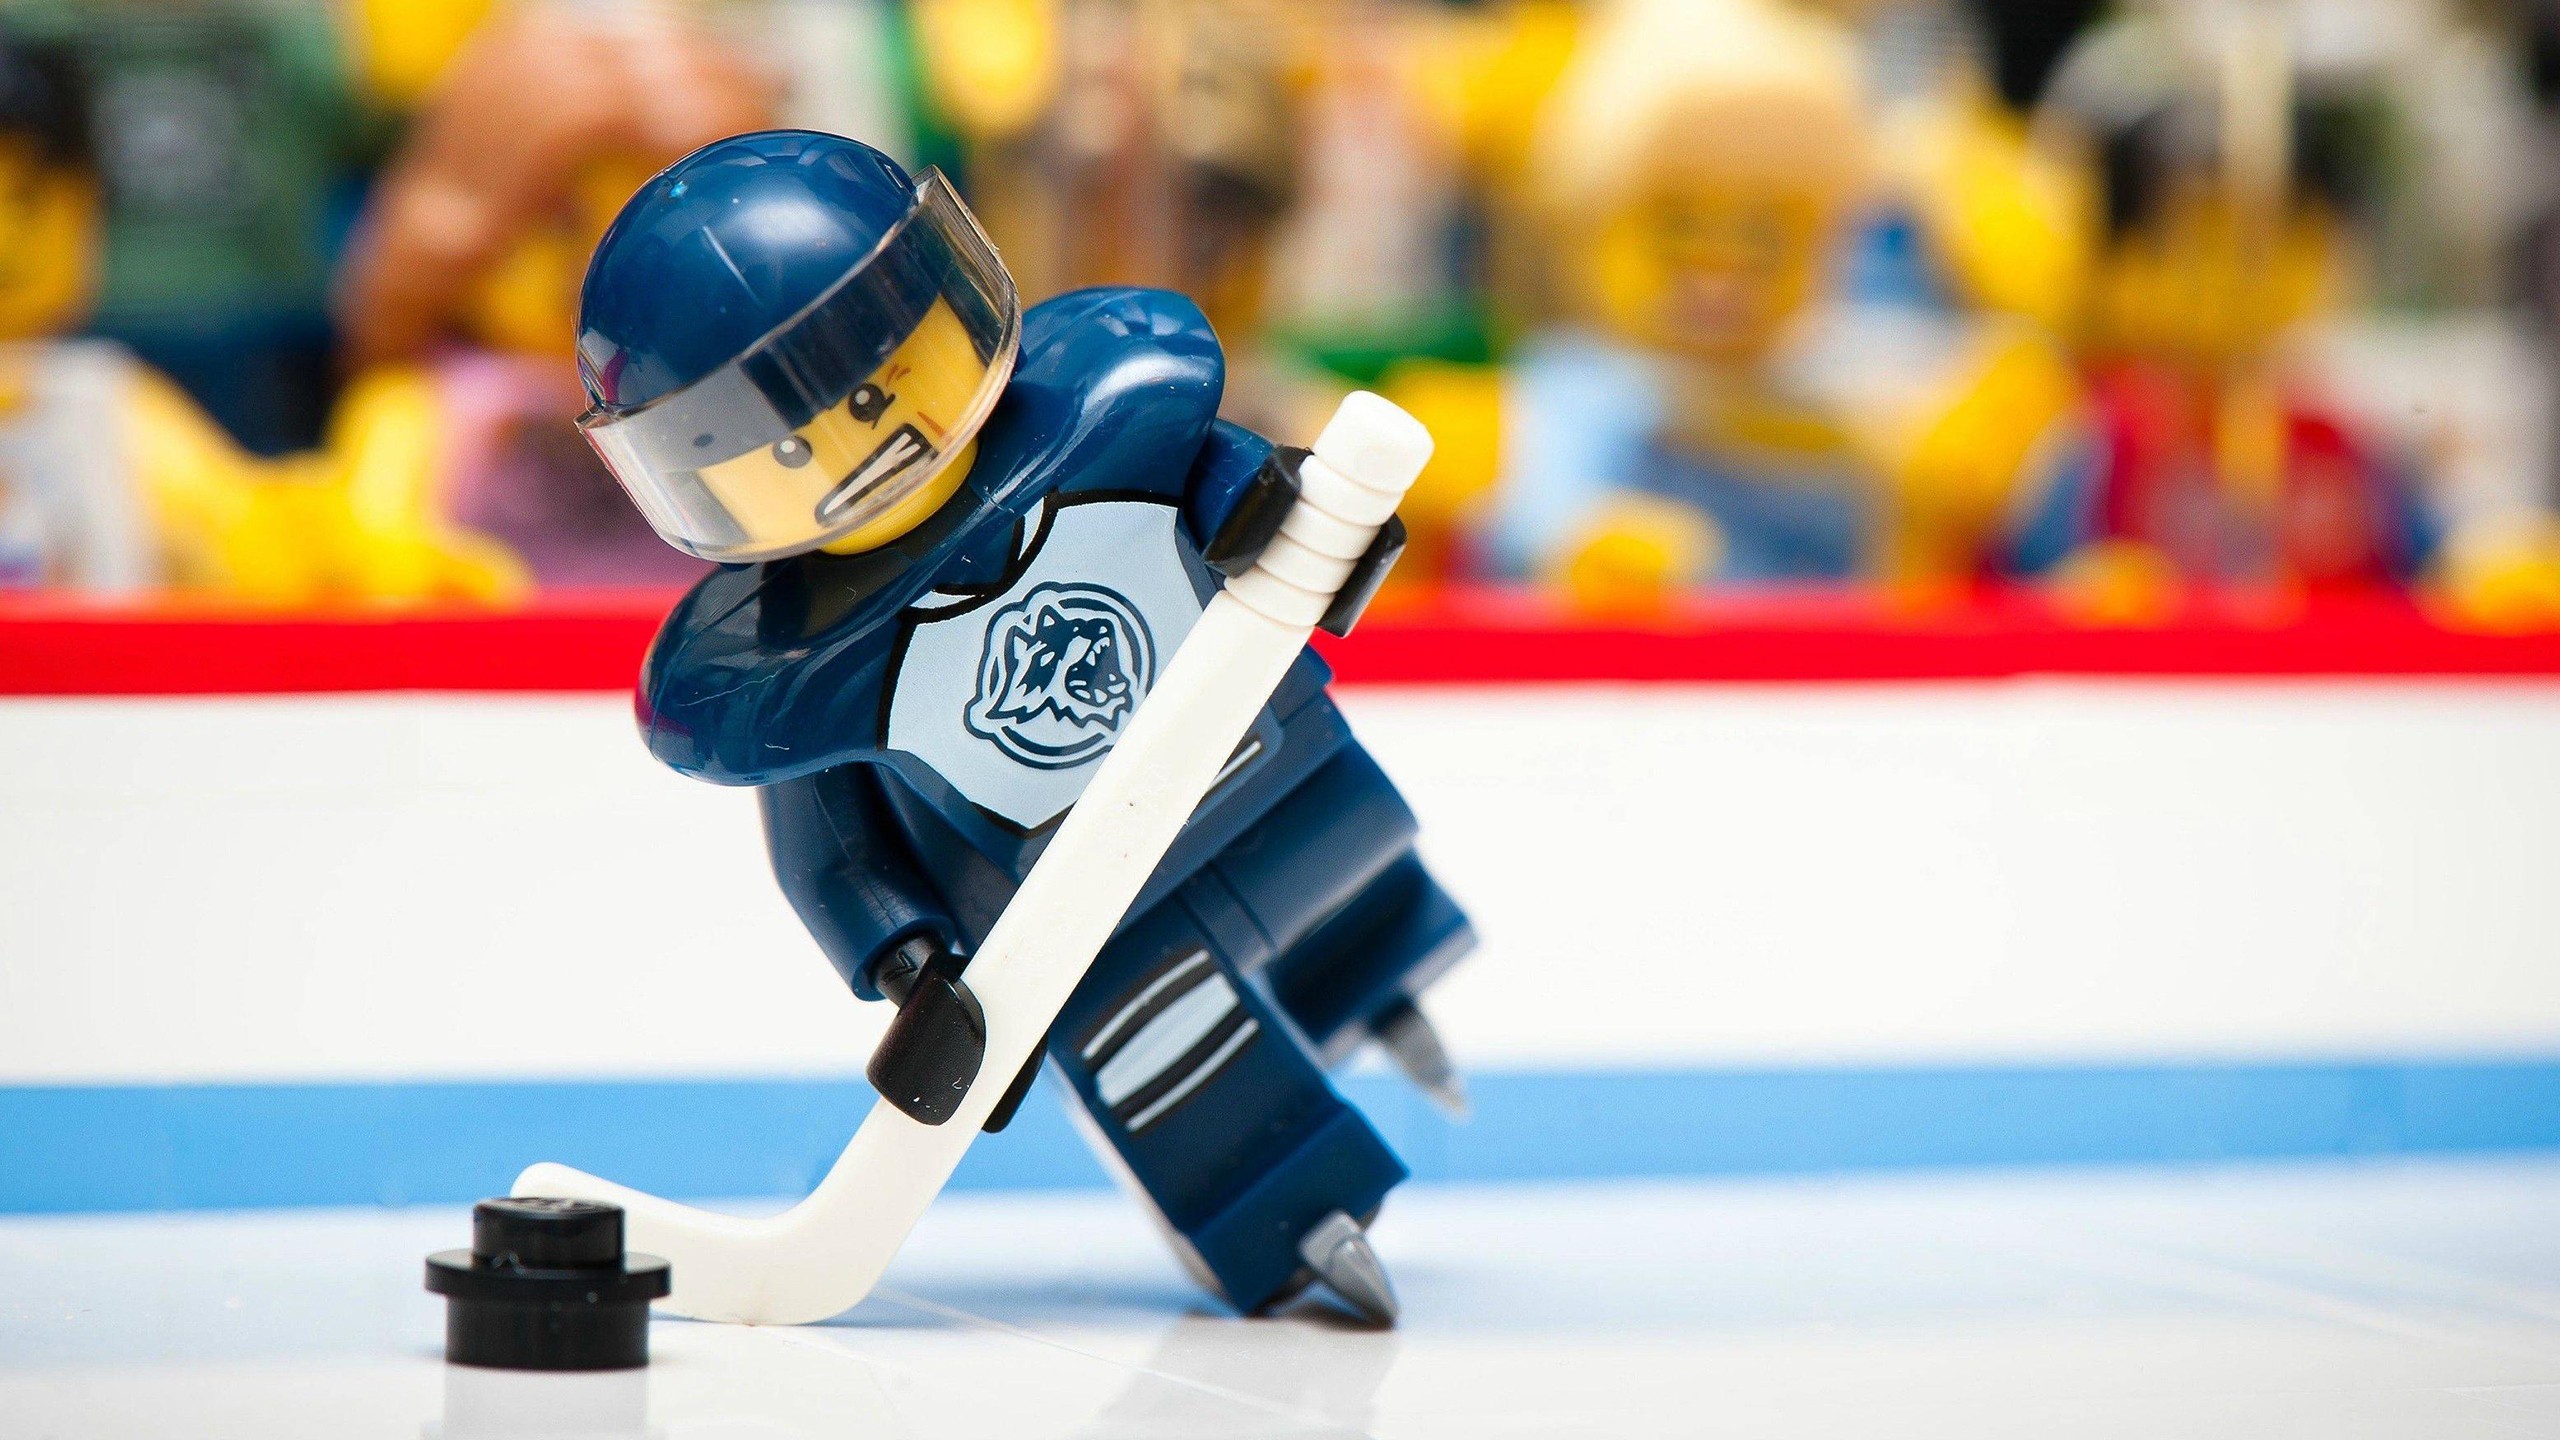 Fond d'ecran Lego Hockey